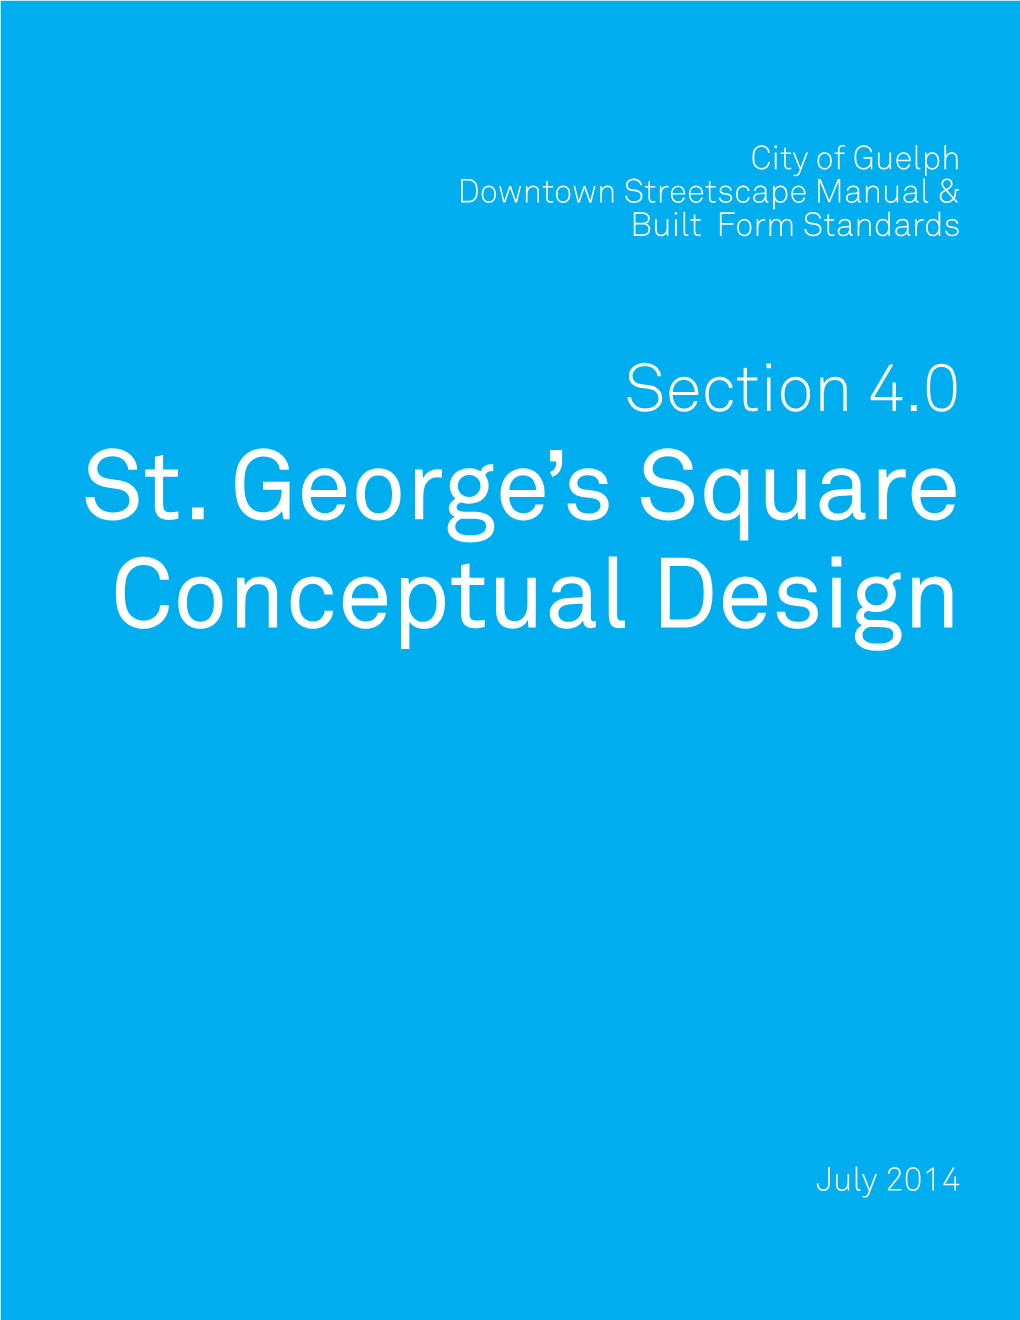 St. George's Square Conceptual Design